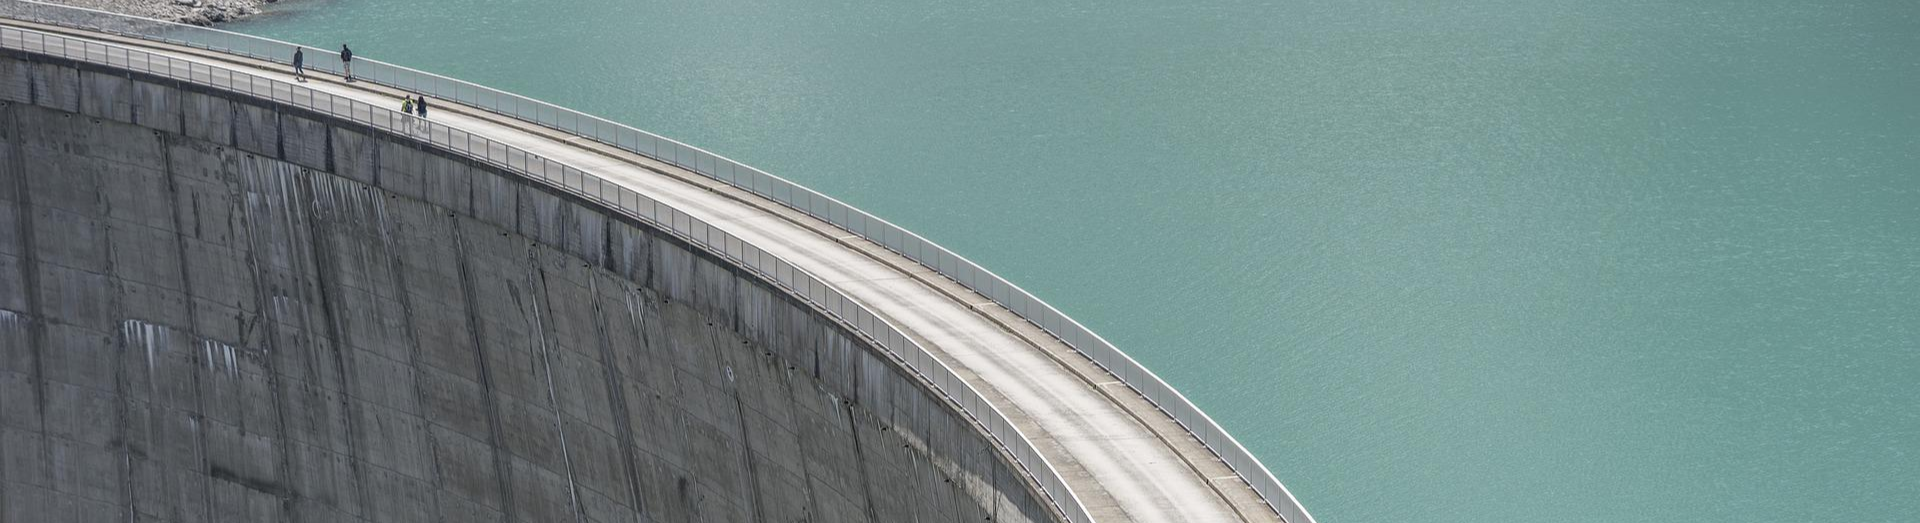 콘크리트 구조체로 만들어진 댐 모습.